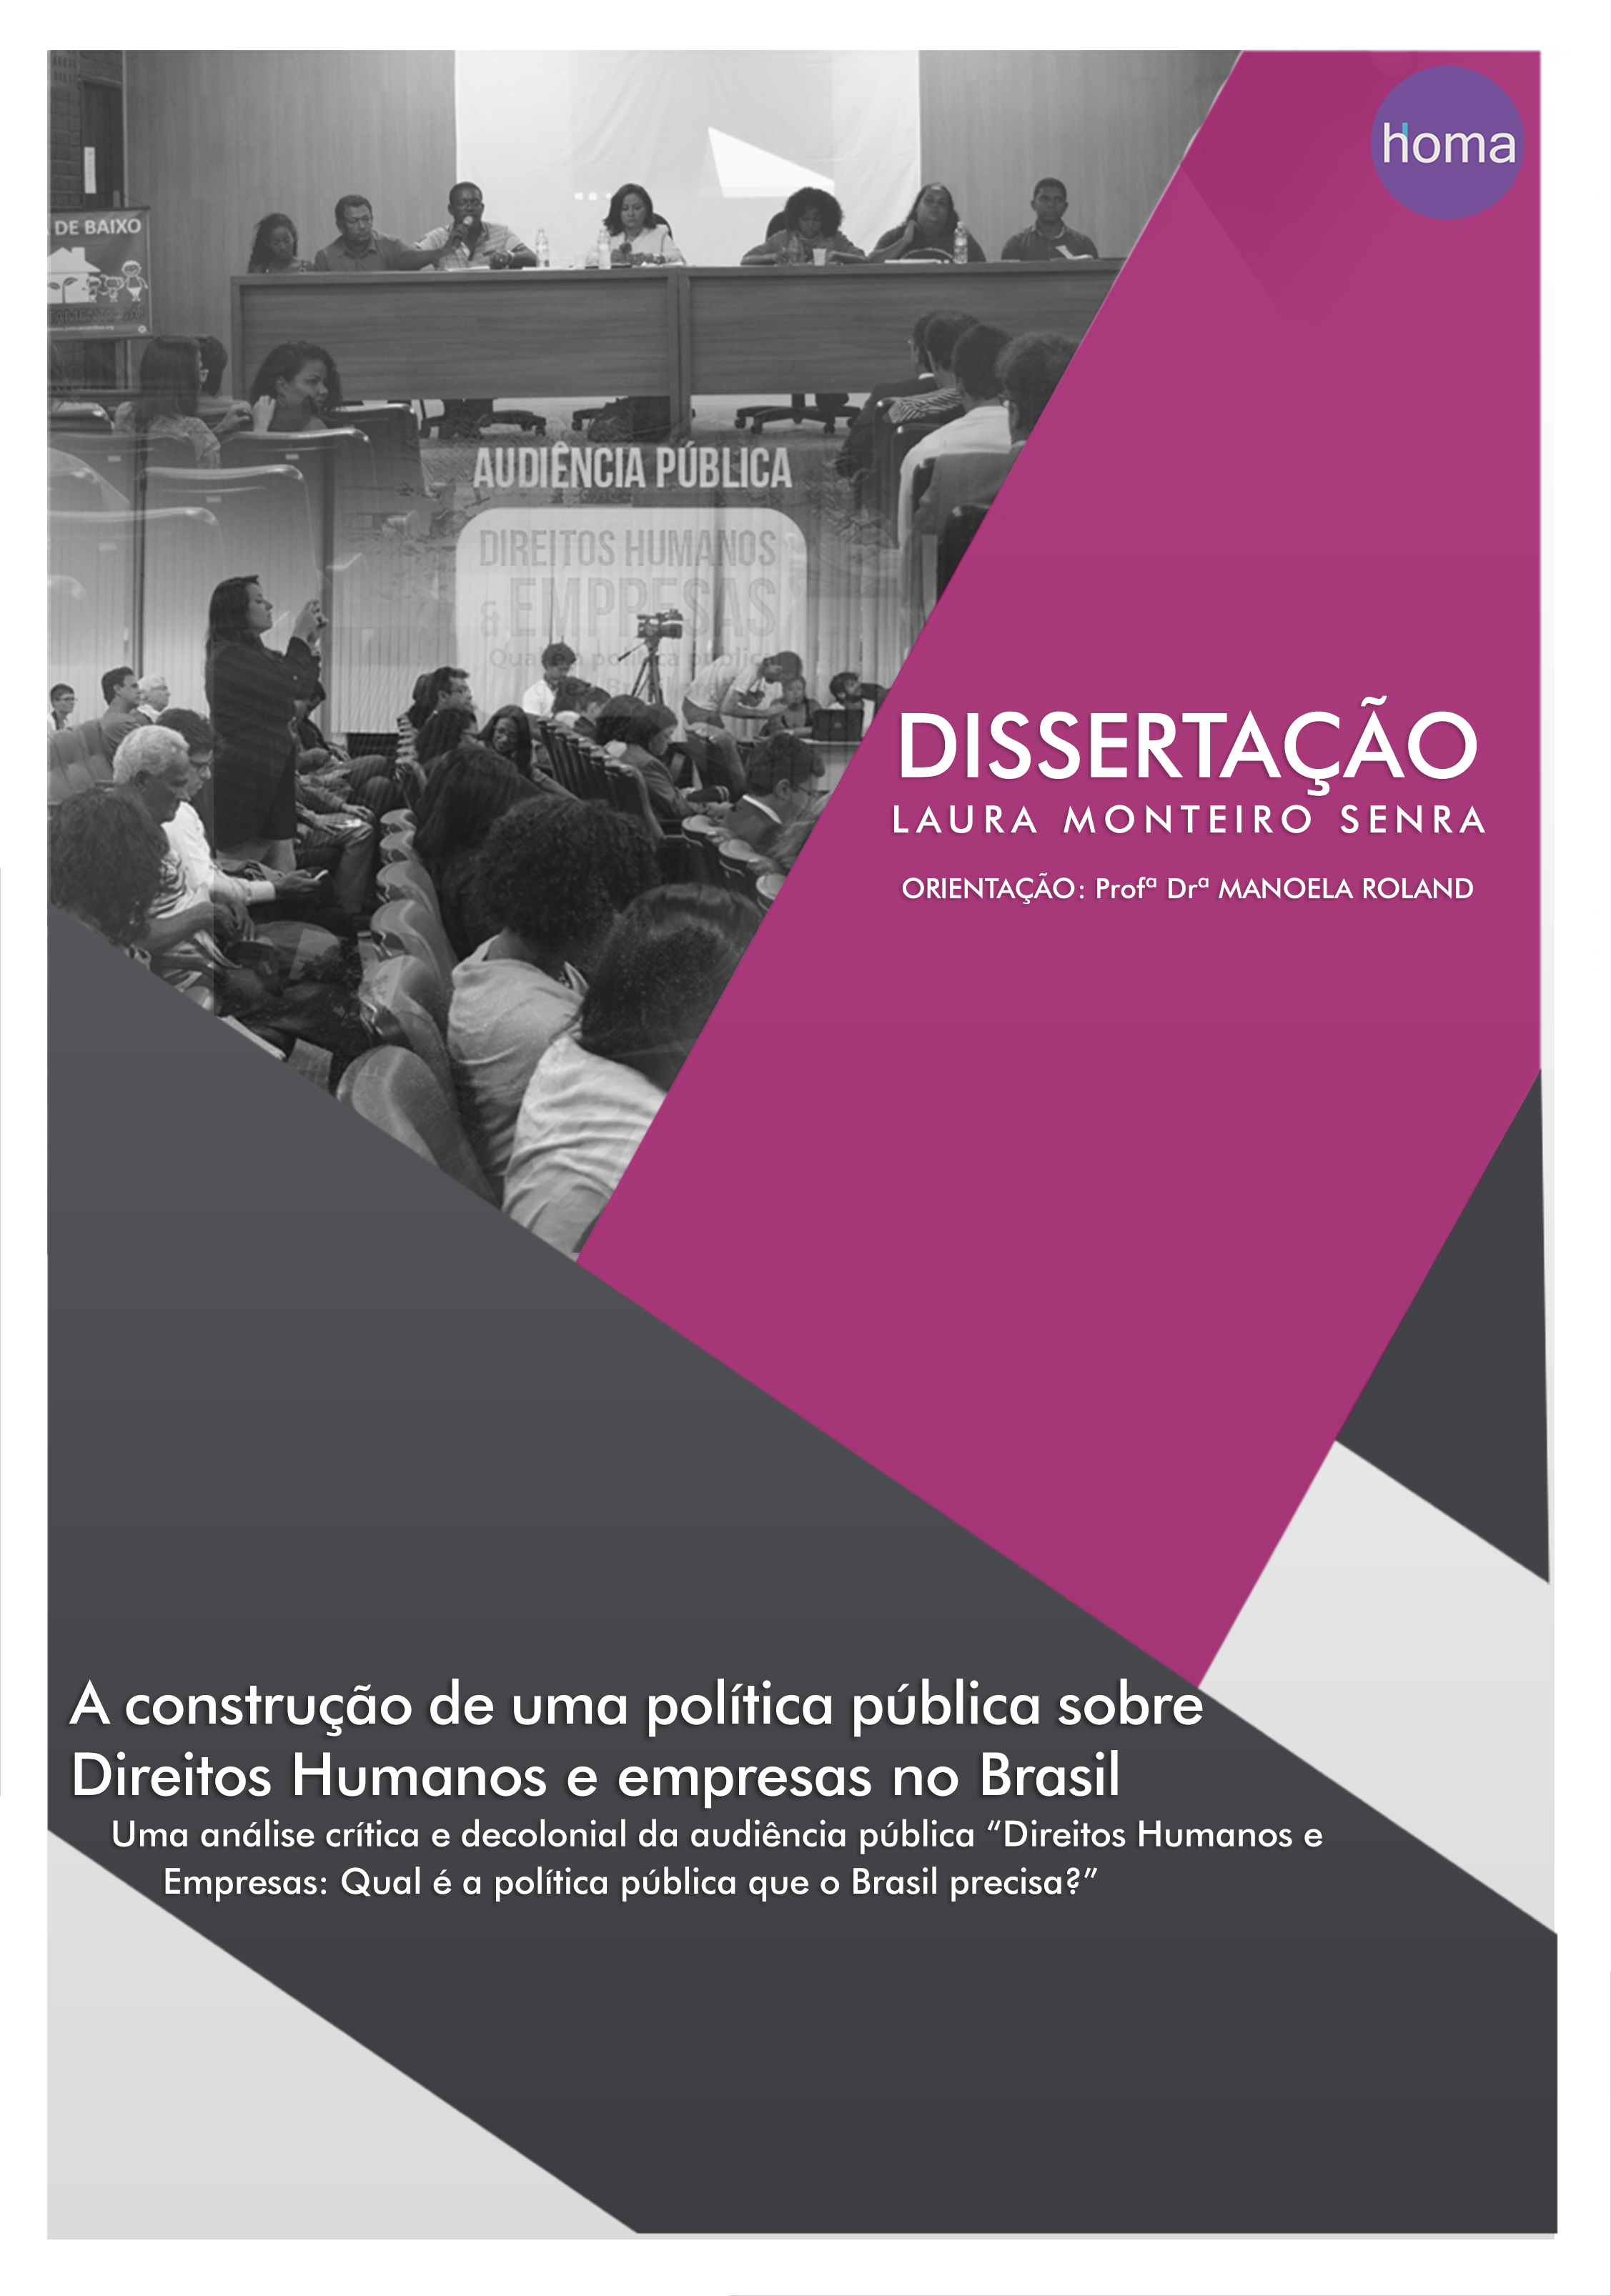 La construcción de una política pública sobre derechos humanos y empresas en Brasil: un análisis crítico y decolonial de la audiencia pública “Derechos humanos y empresas: ¿Cual política pública necesita Brasil? "